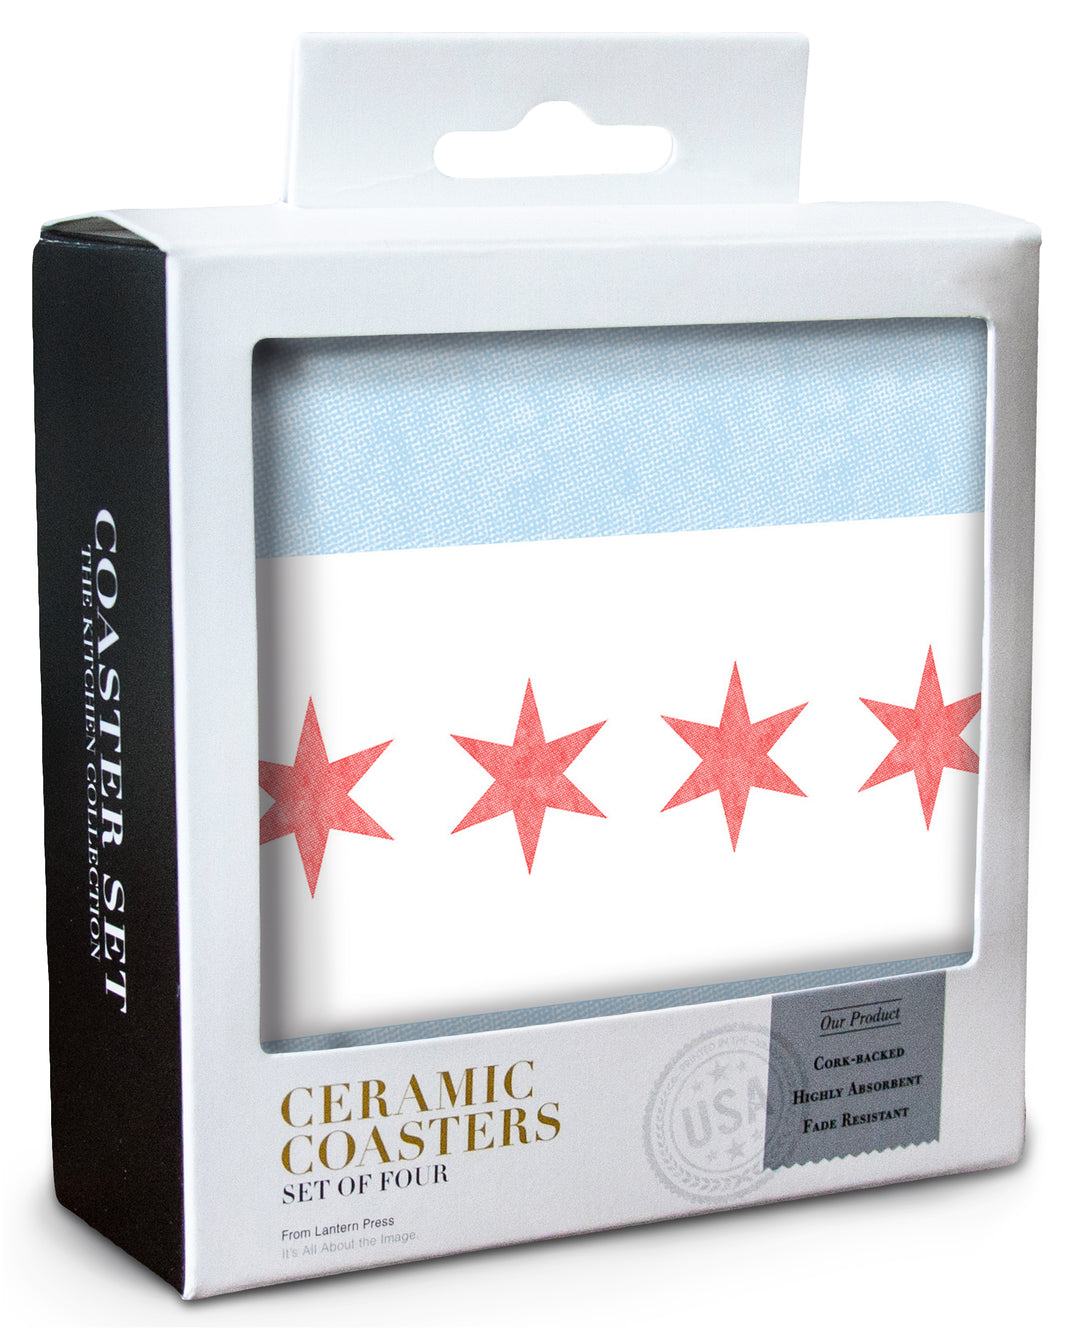 Chicago, Illinois, Flag, Coaster Set